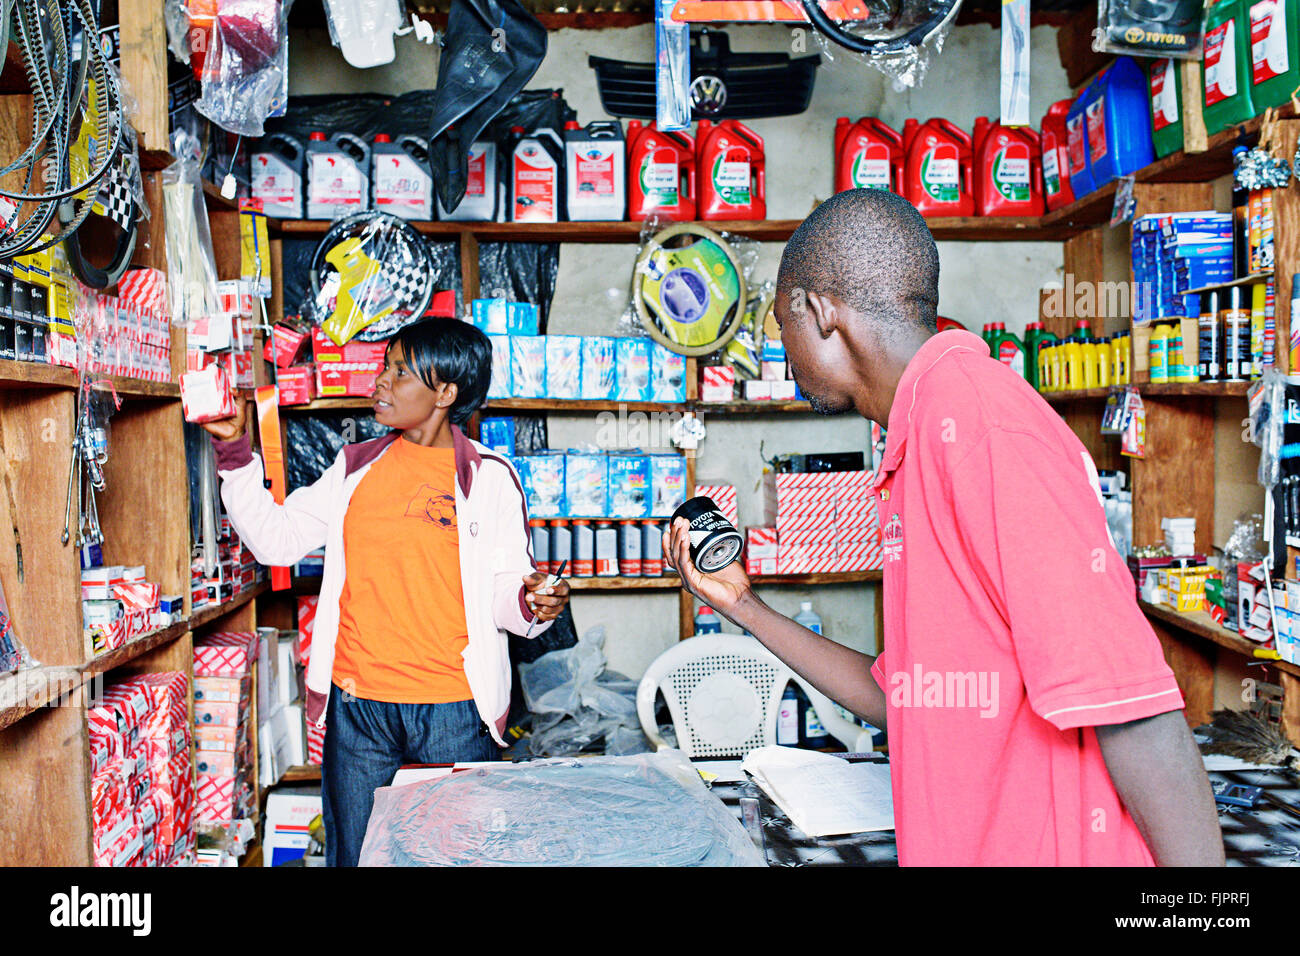 Man buing car parts in small shop Manyama, Zambia. Stock Photo